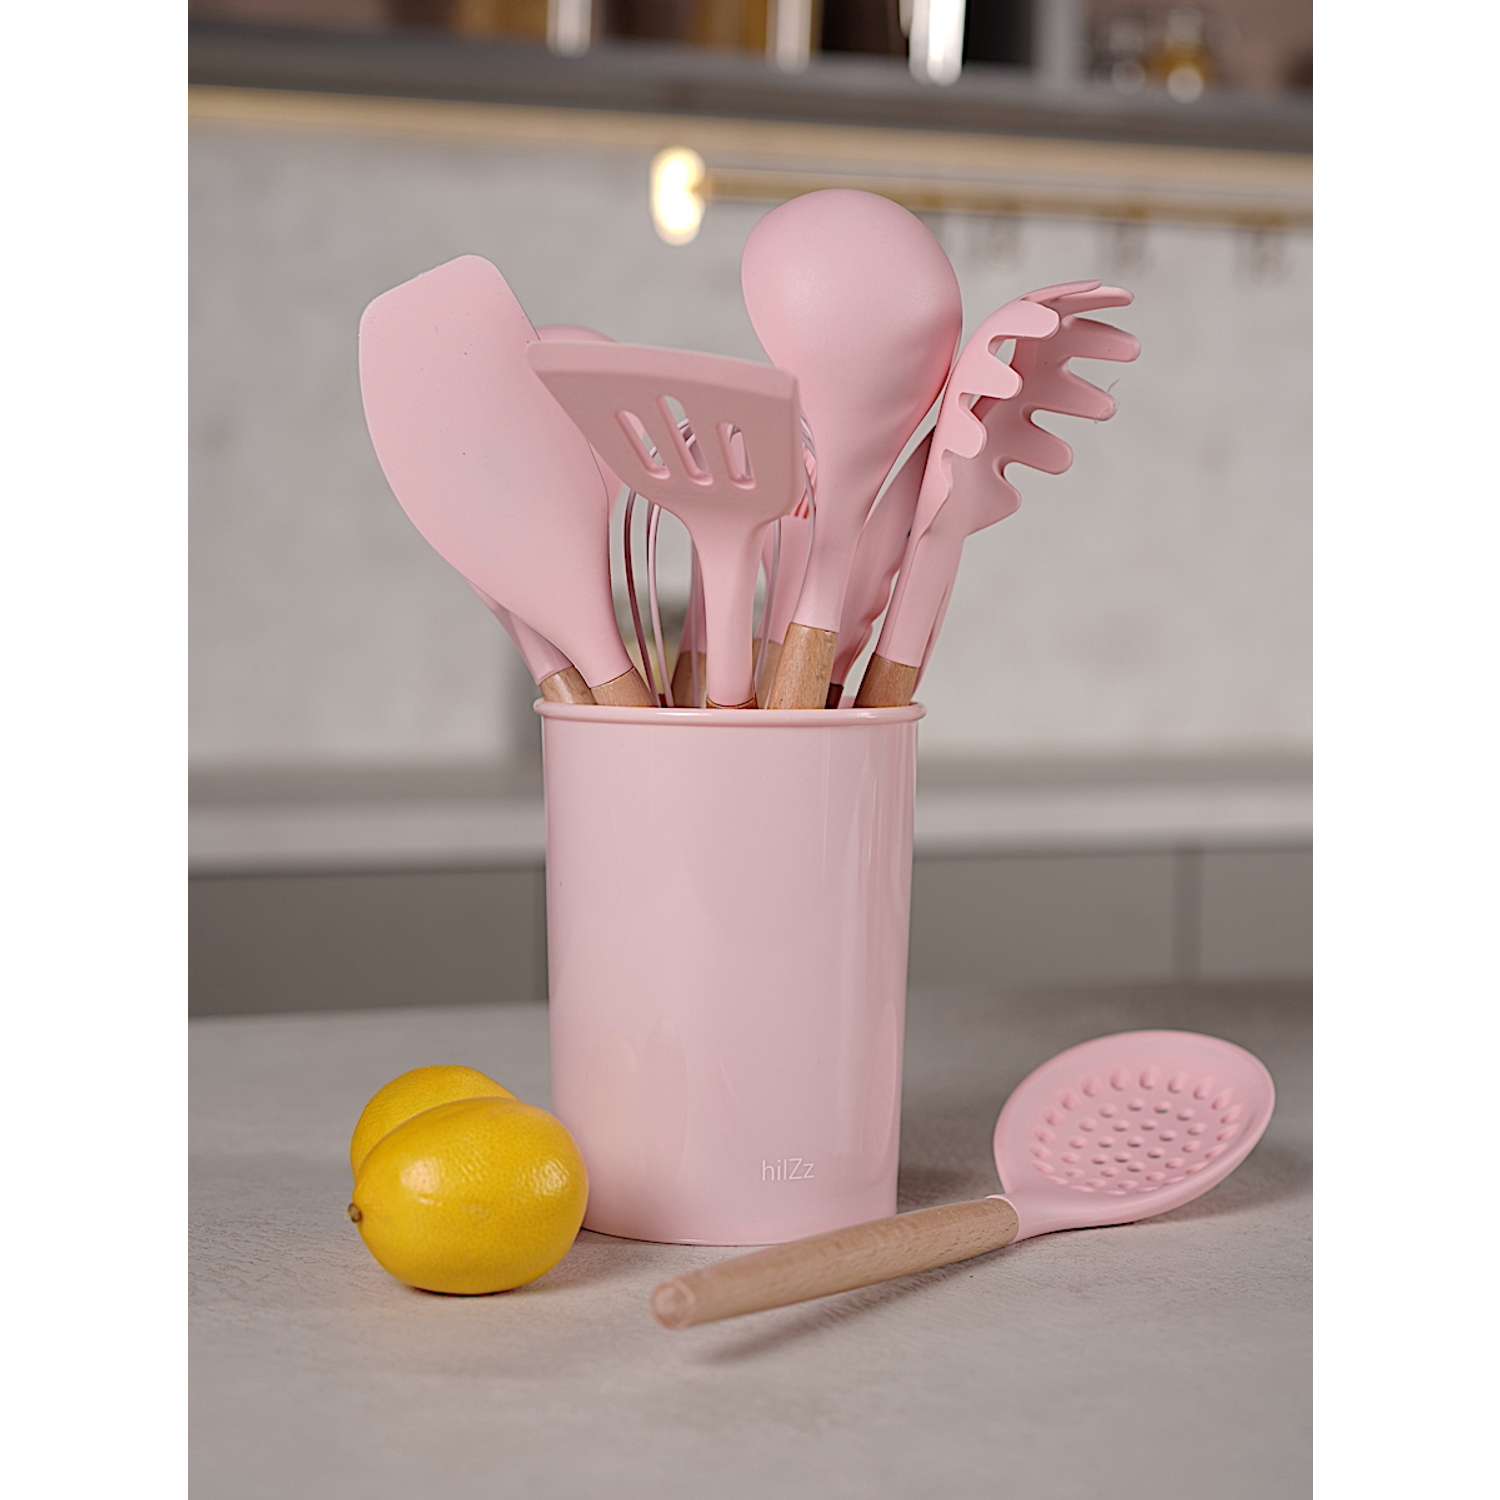 Набор кухонных принадлежностей HILZZ 12 предметов розовый - фото 1